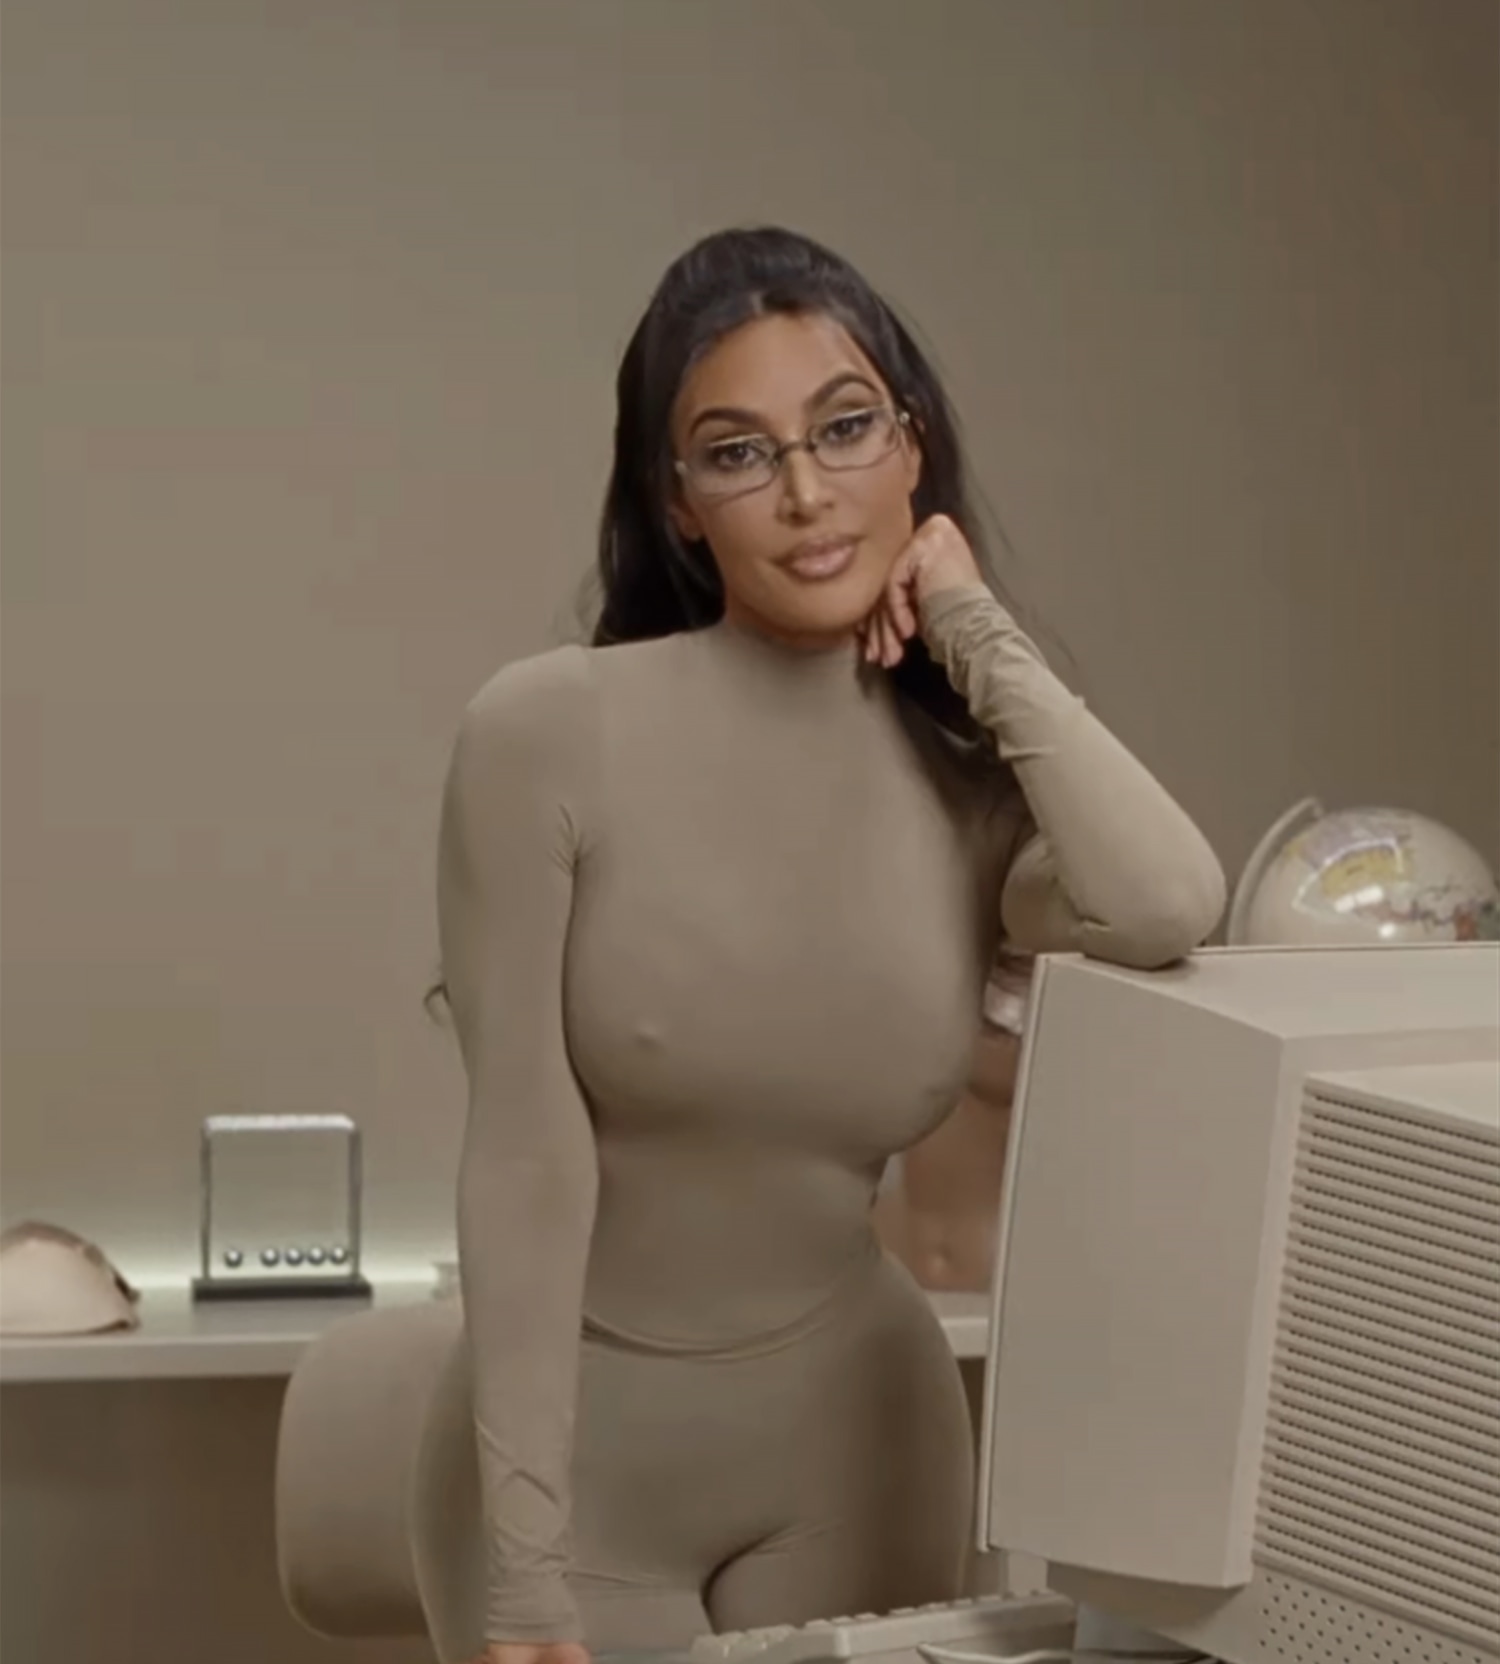 I've got 36DD boobs and tried Kim Kardashian's Skims bra - people